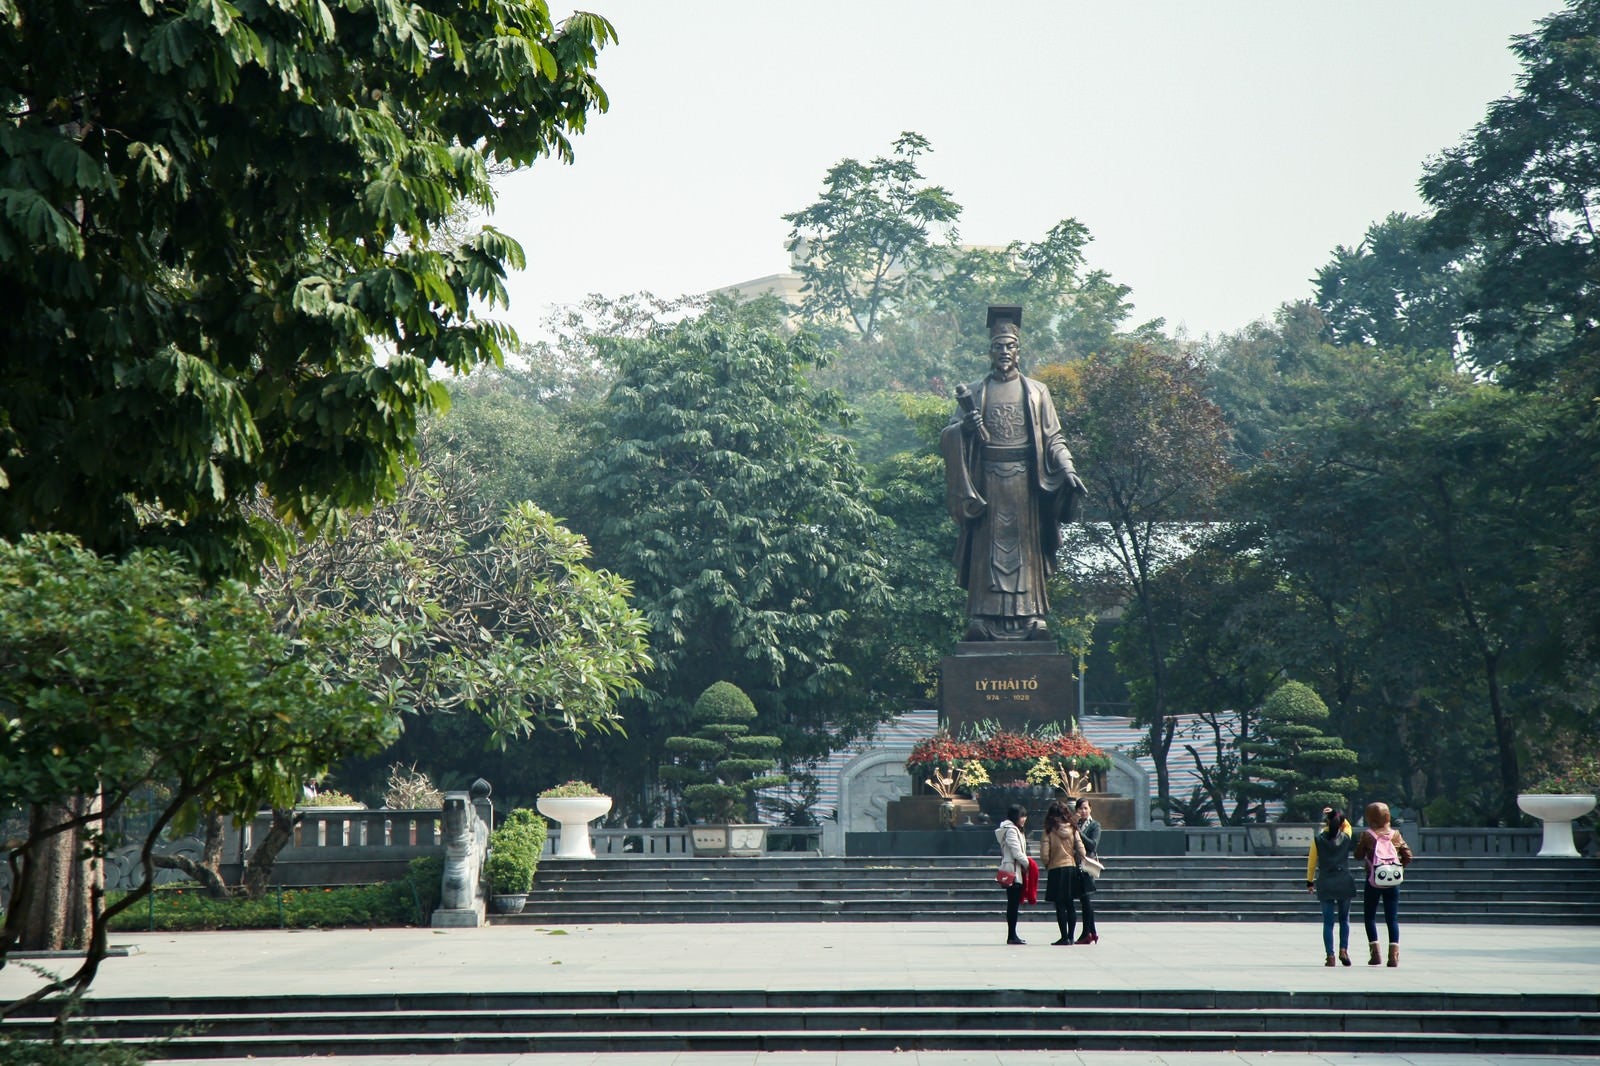 「ベトナム・ハノイのリータイトー公園にある李太祖(リータイトー)のブロンズ像」の写真